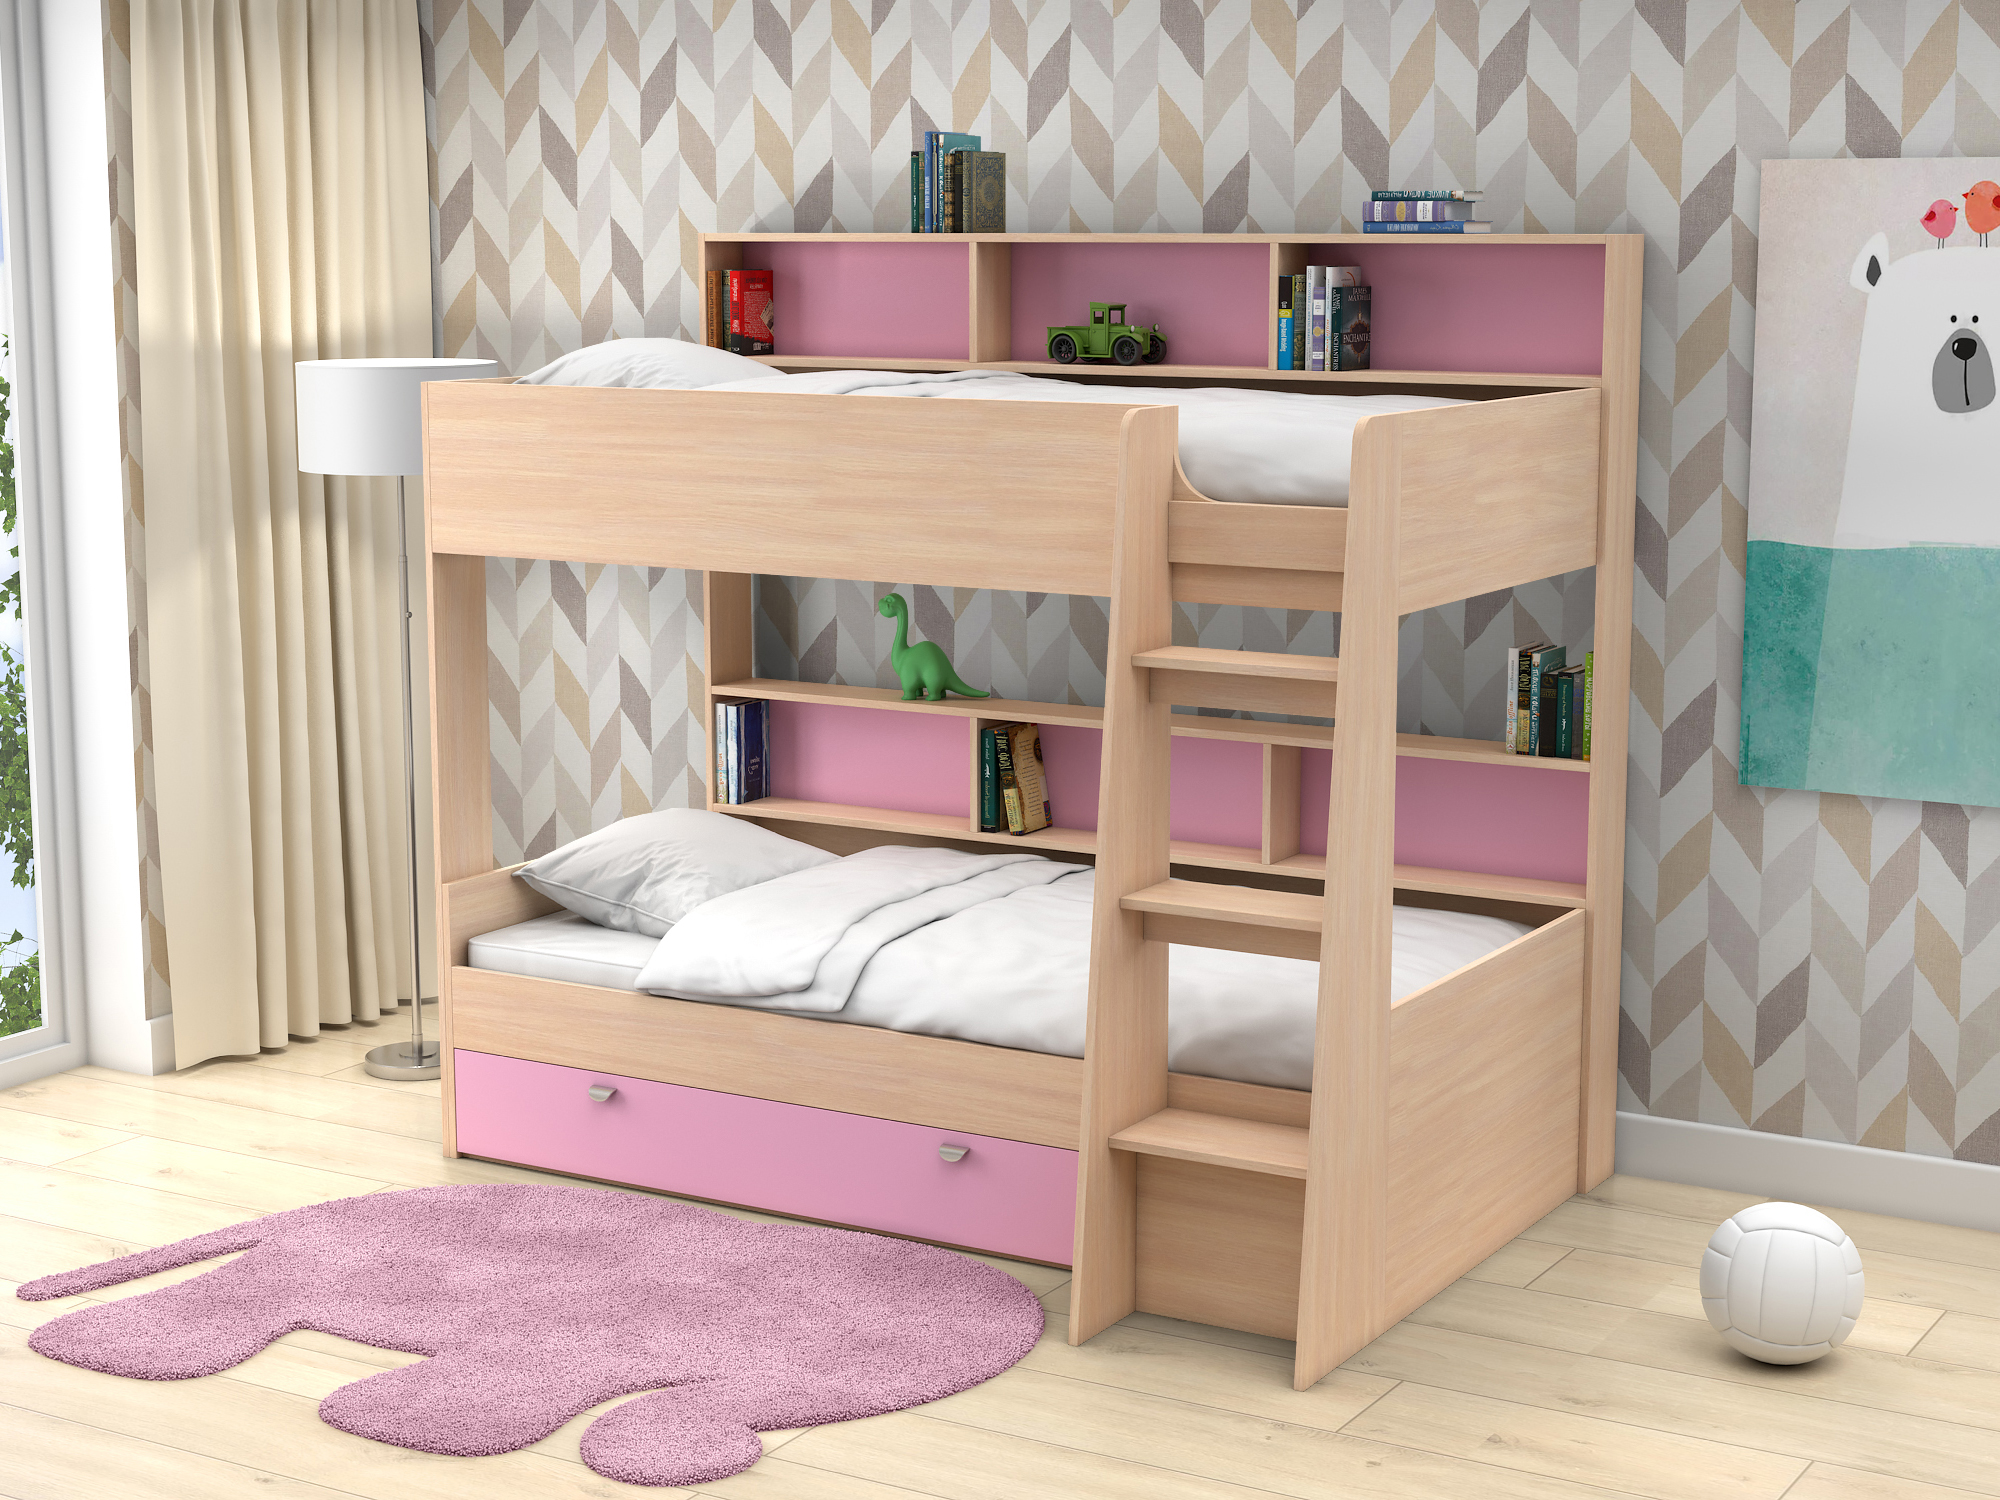 Двухъярусная кровать Golden Kids-1 (90х200) Розовый, Белый, Бежевый, ЛДСП двухъярусная кровать golden kids 1 90х200 бежевый лдсп